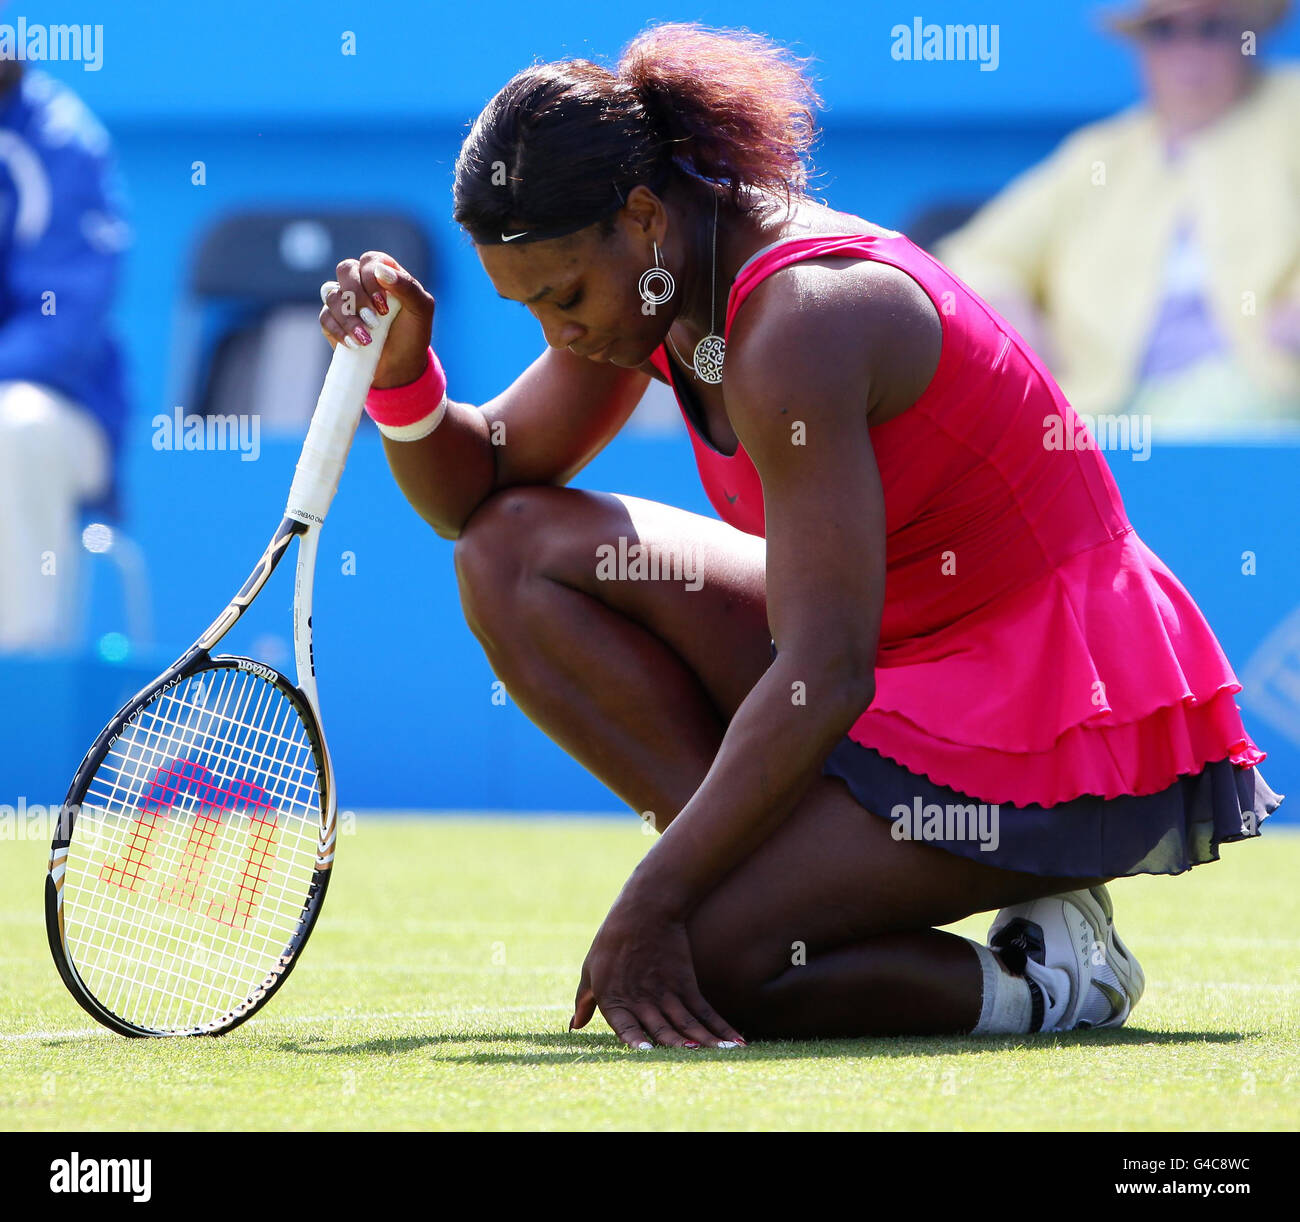 USA's Serena Williams dopo aver inciampato nella sua partita contro vera Zvonareva della Russia durante l'AEGON International al Devonshire Park, Eastbourne. Foto Stock